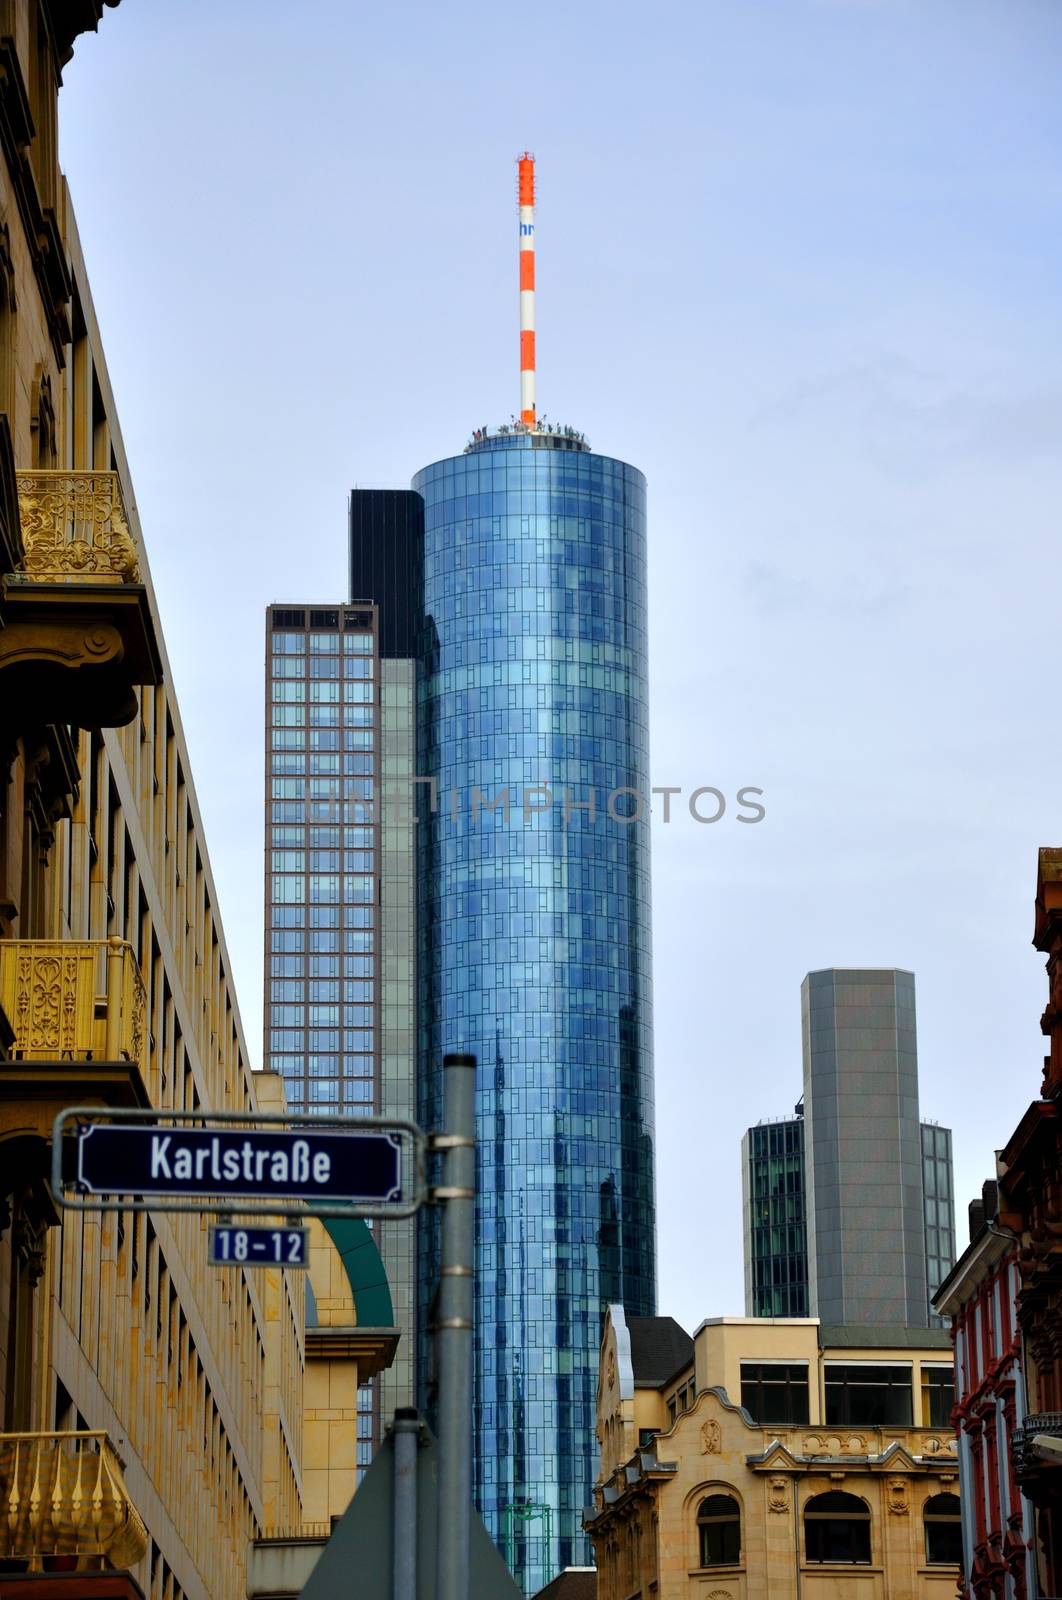 Maintower Skyscraper in Frankfurt in Hessen, Germany by Eagle2308